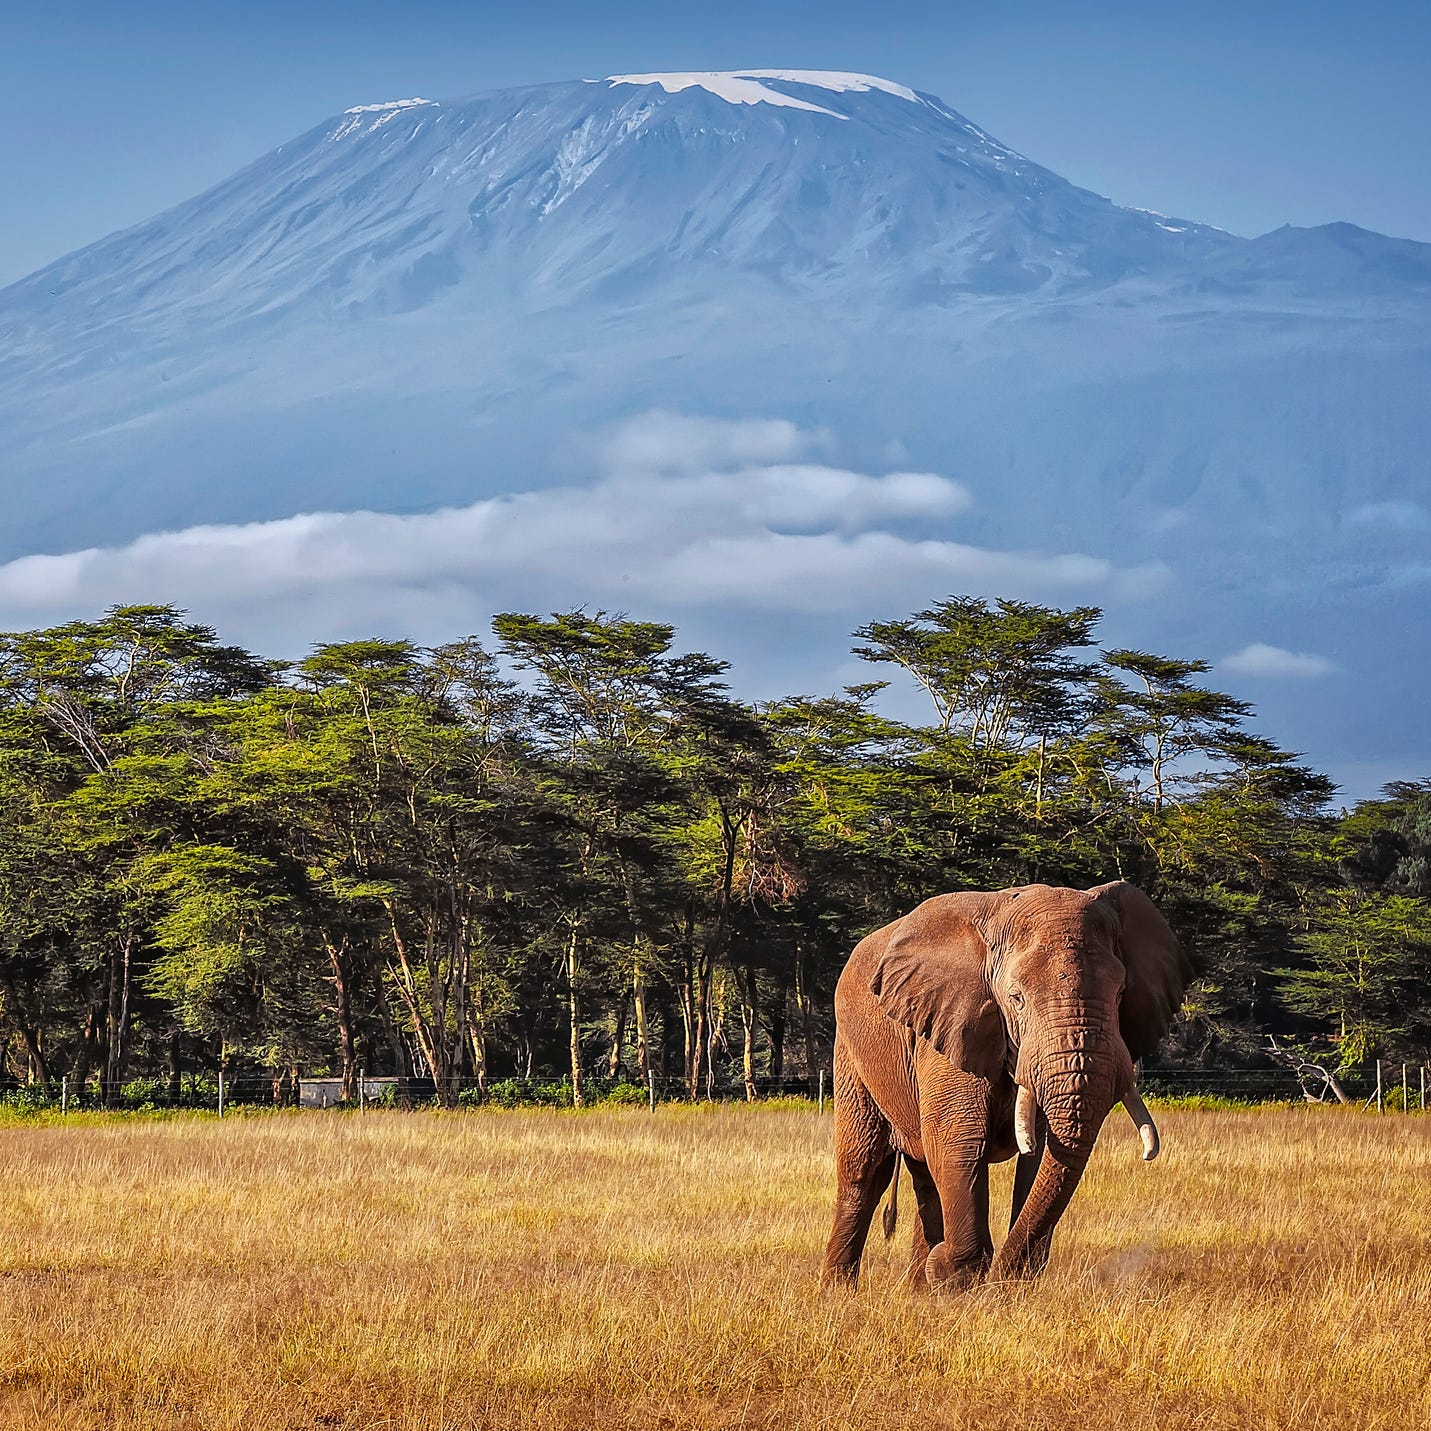 Mount Kilimanjaro in Tanzania.